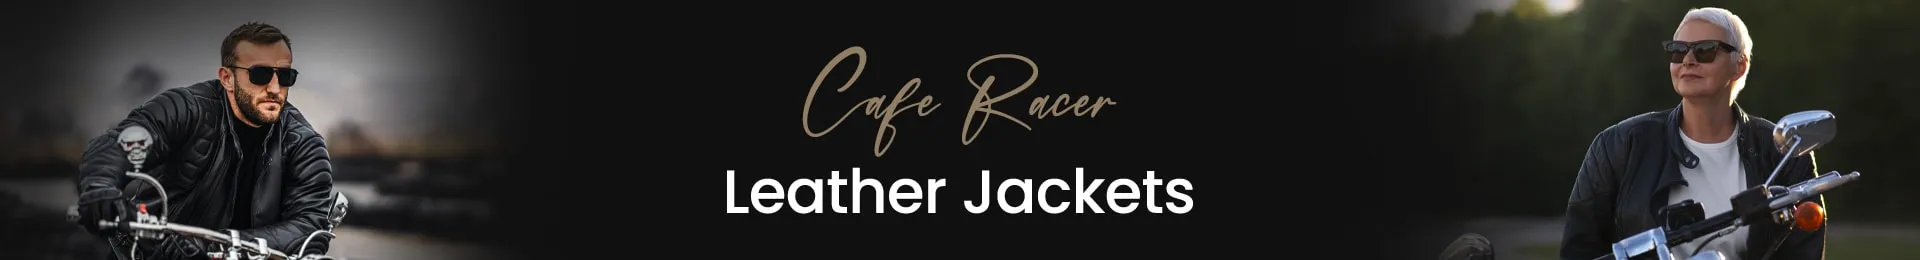 cafe racer leather jackets, mens cafe racer leather jacket, cafe leather jacket